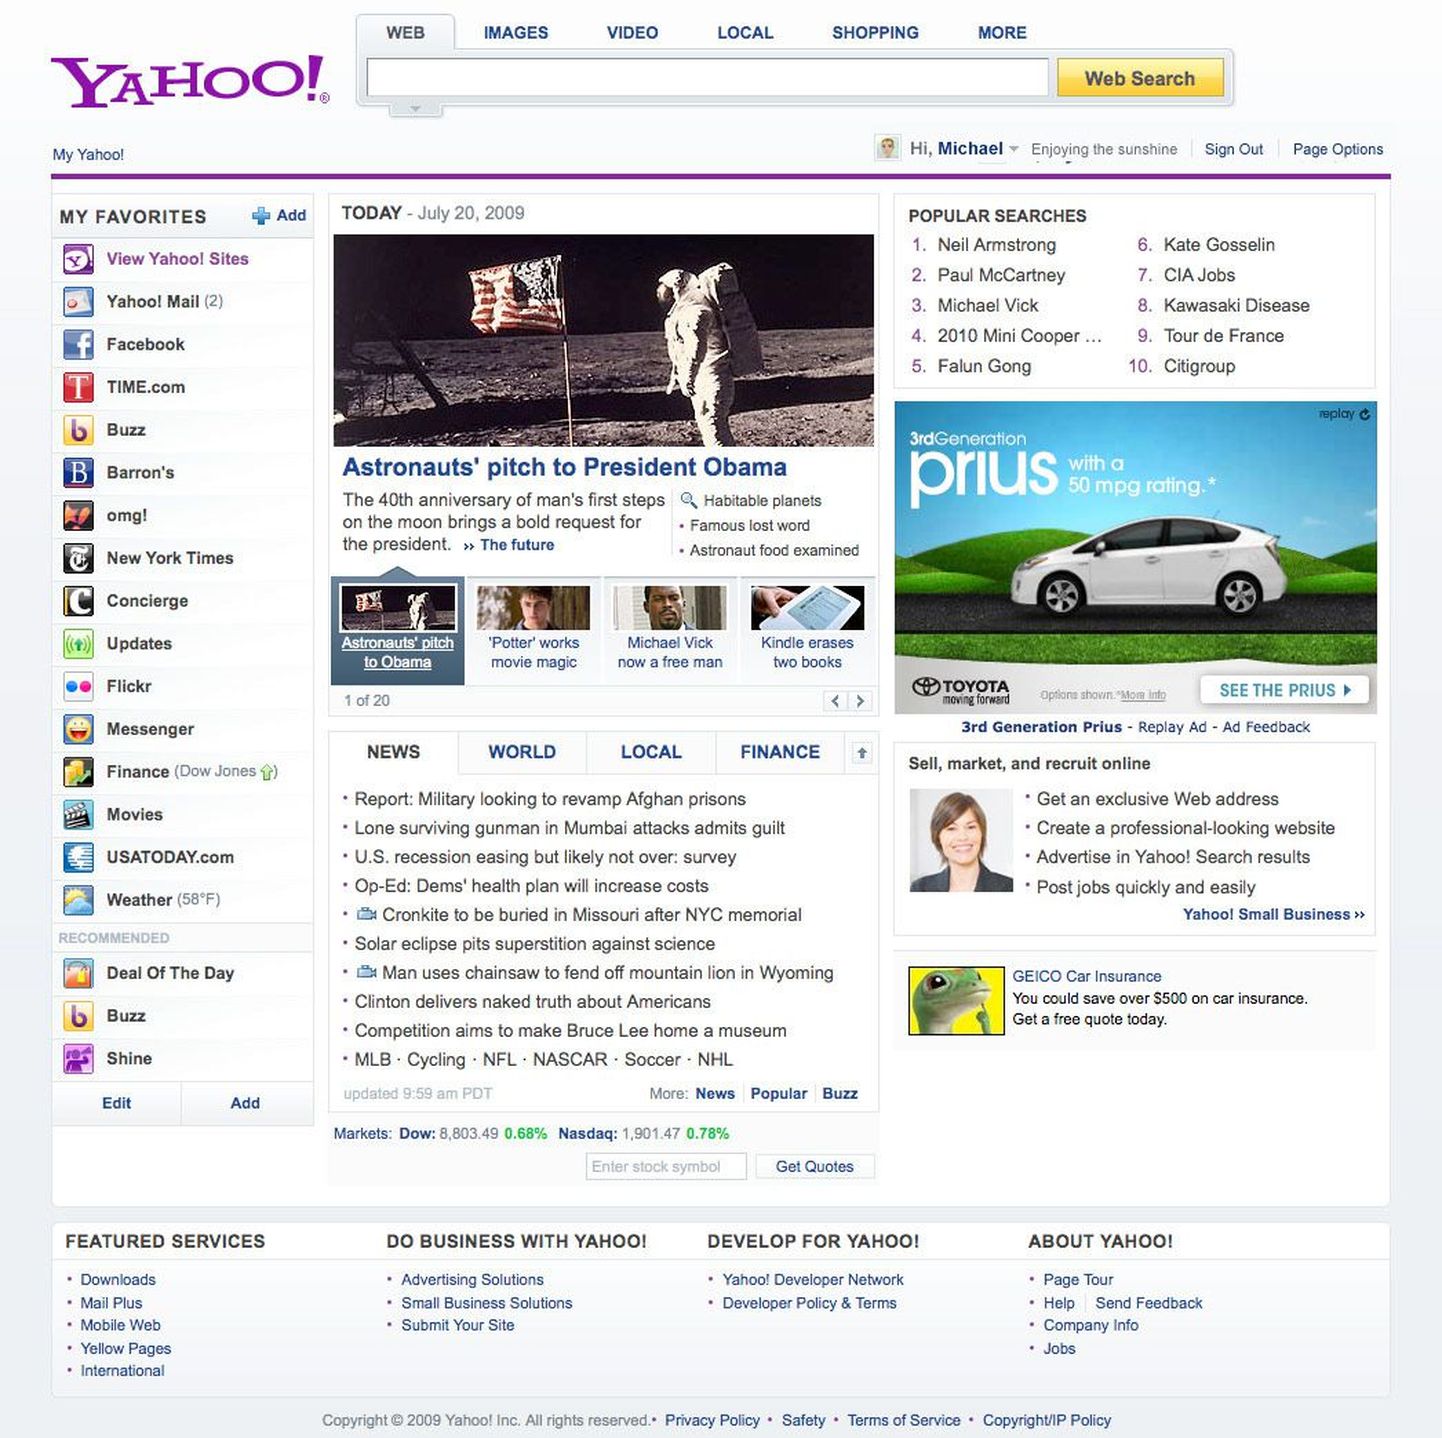 Yahoo uue kujundusega koduleht 21. juulil 2009